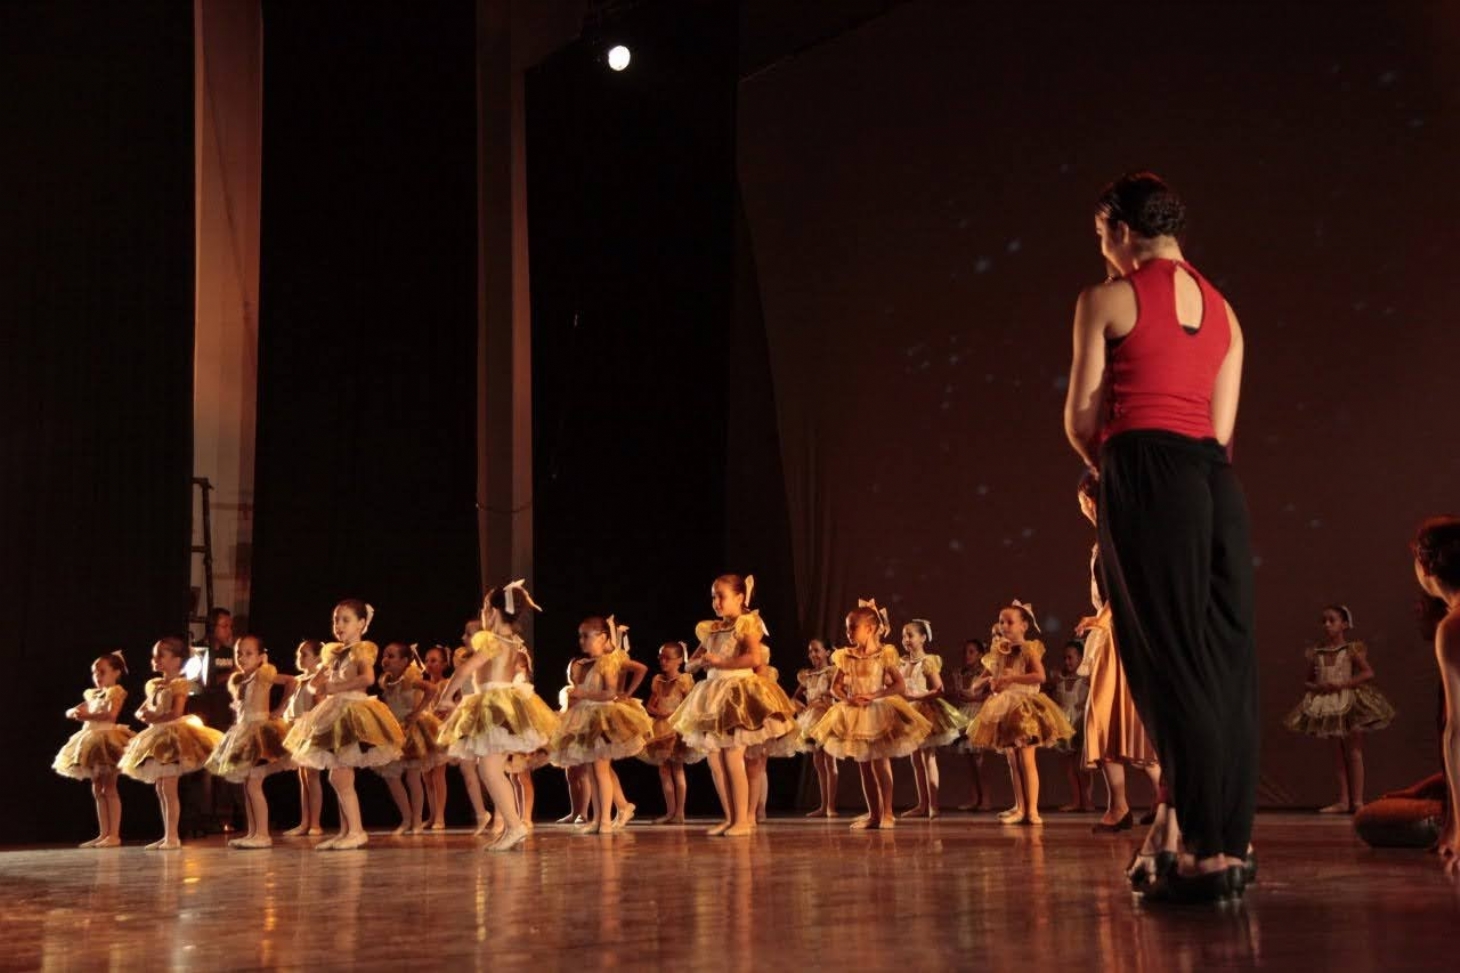 Espetáculo de balé é atração on-line neste sábado | Jornal da Orla